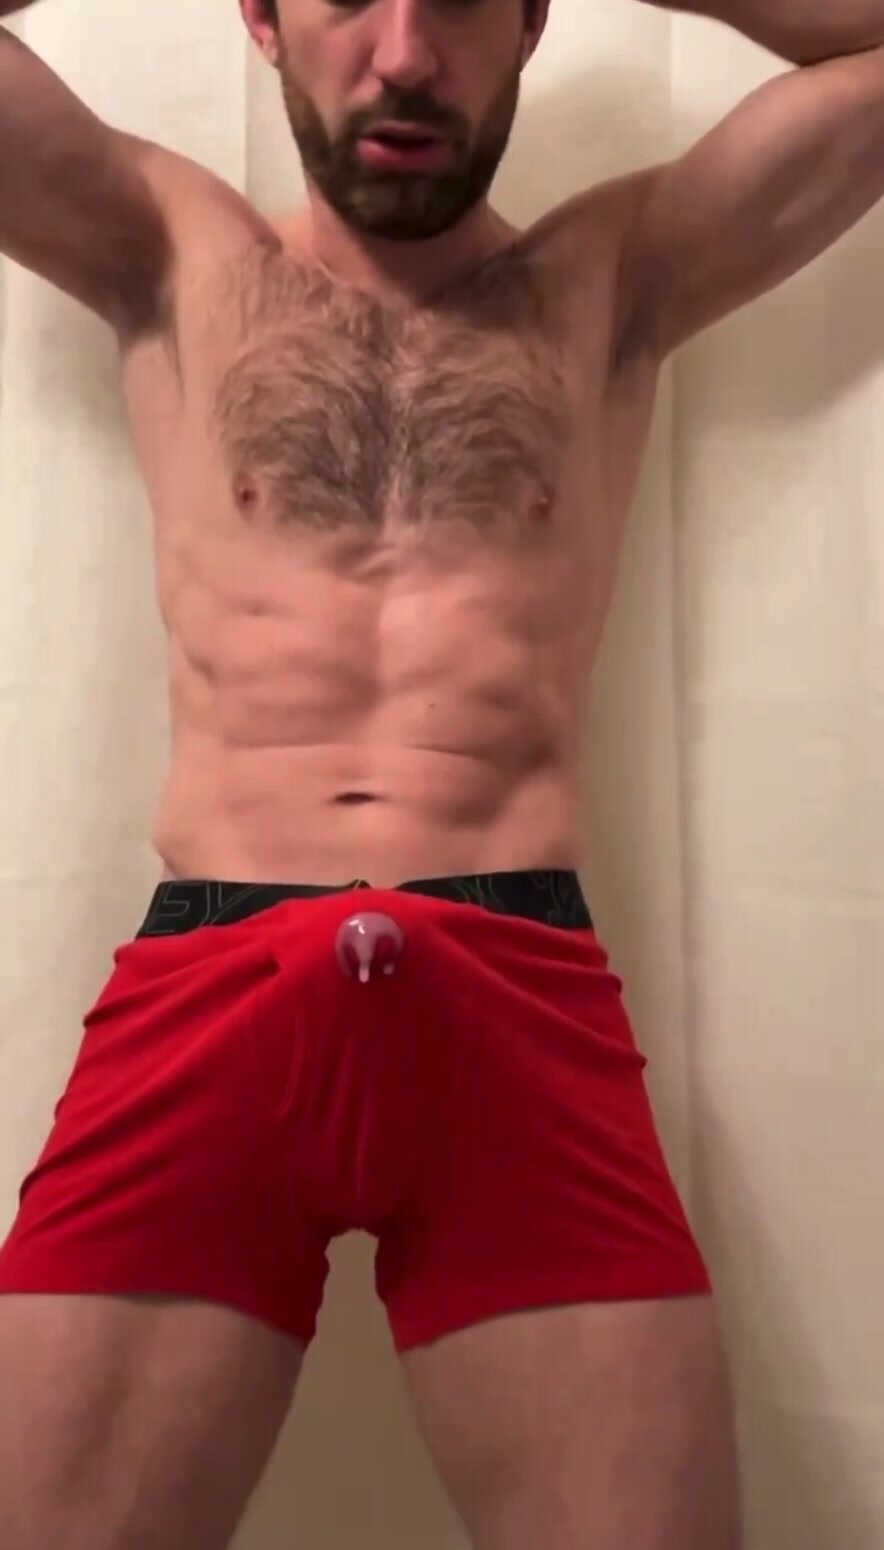 Muscular man is cumming through his boxers